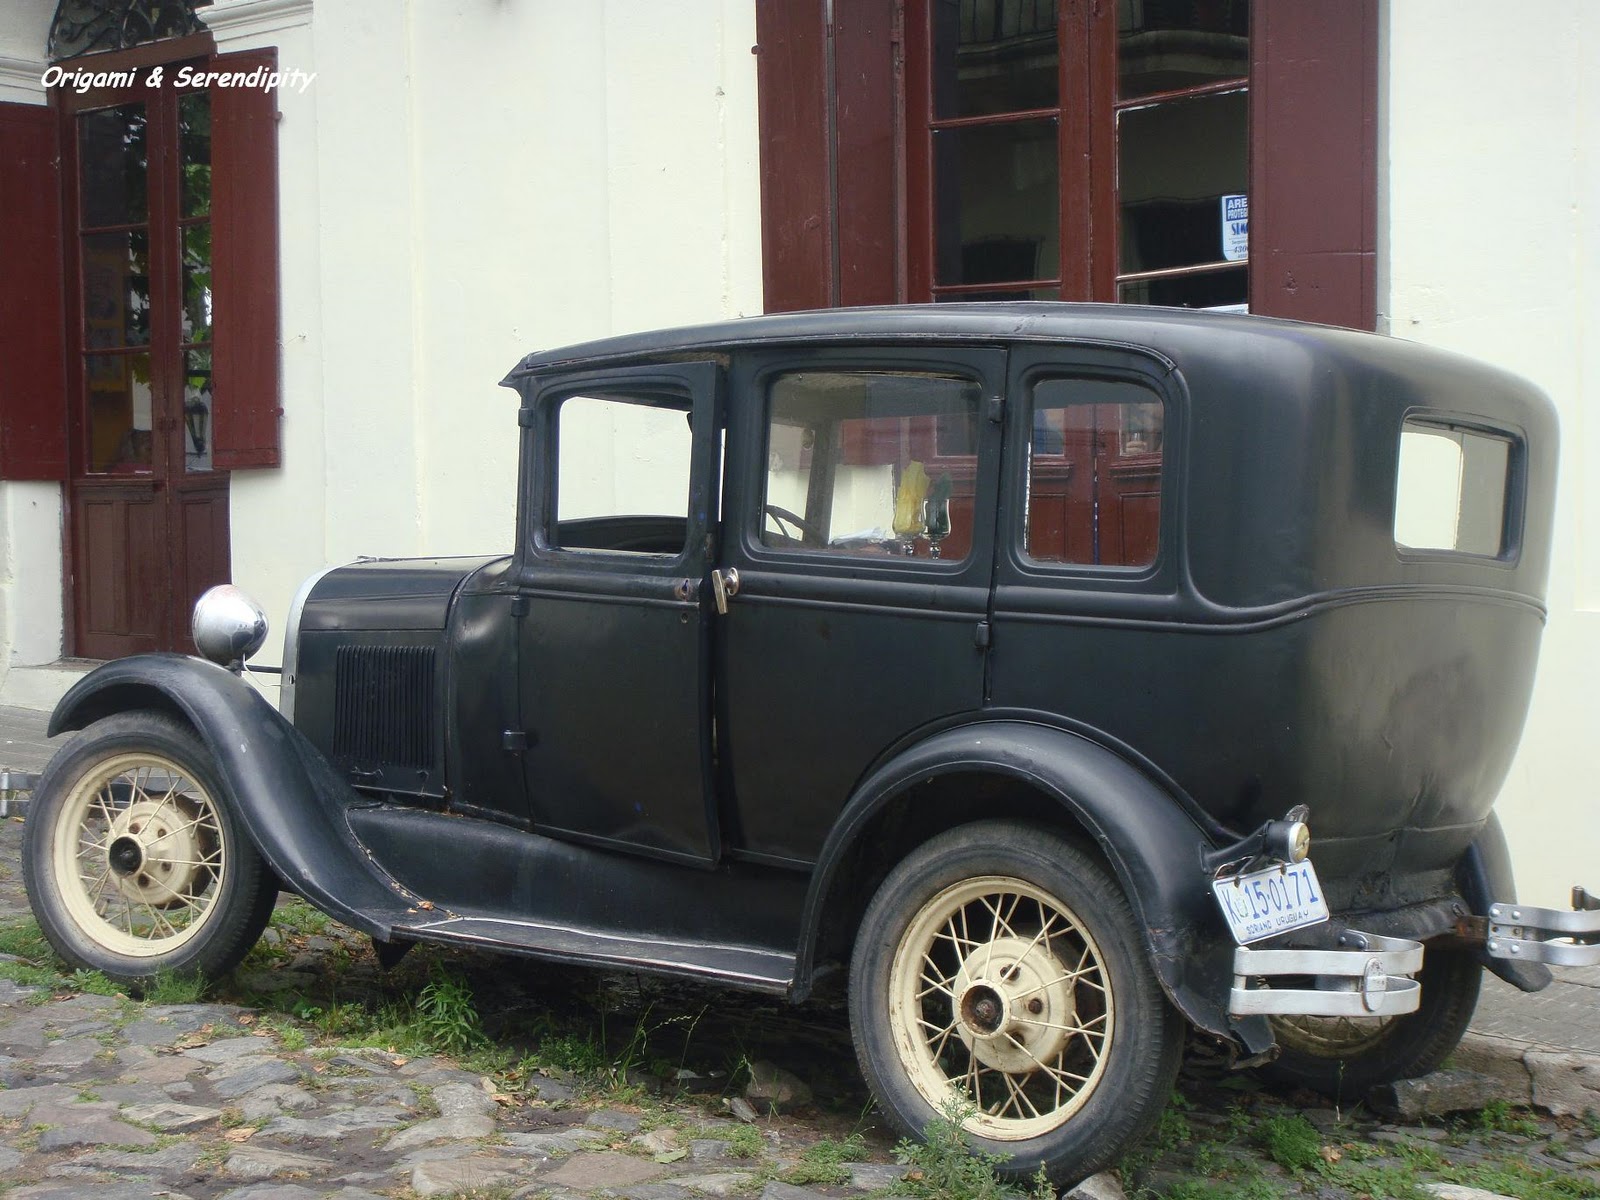 Autos antiguos, Autos de colección, Colonia del Sacramento, Uruguay, Elisa N, Blog de Viajes Argentina